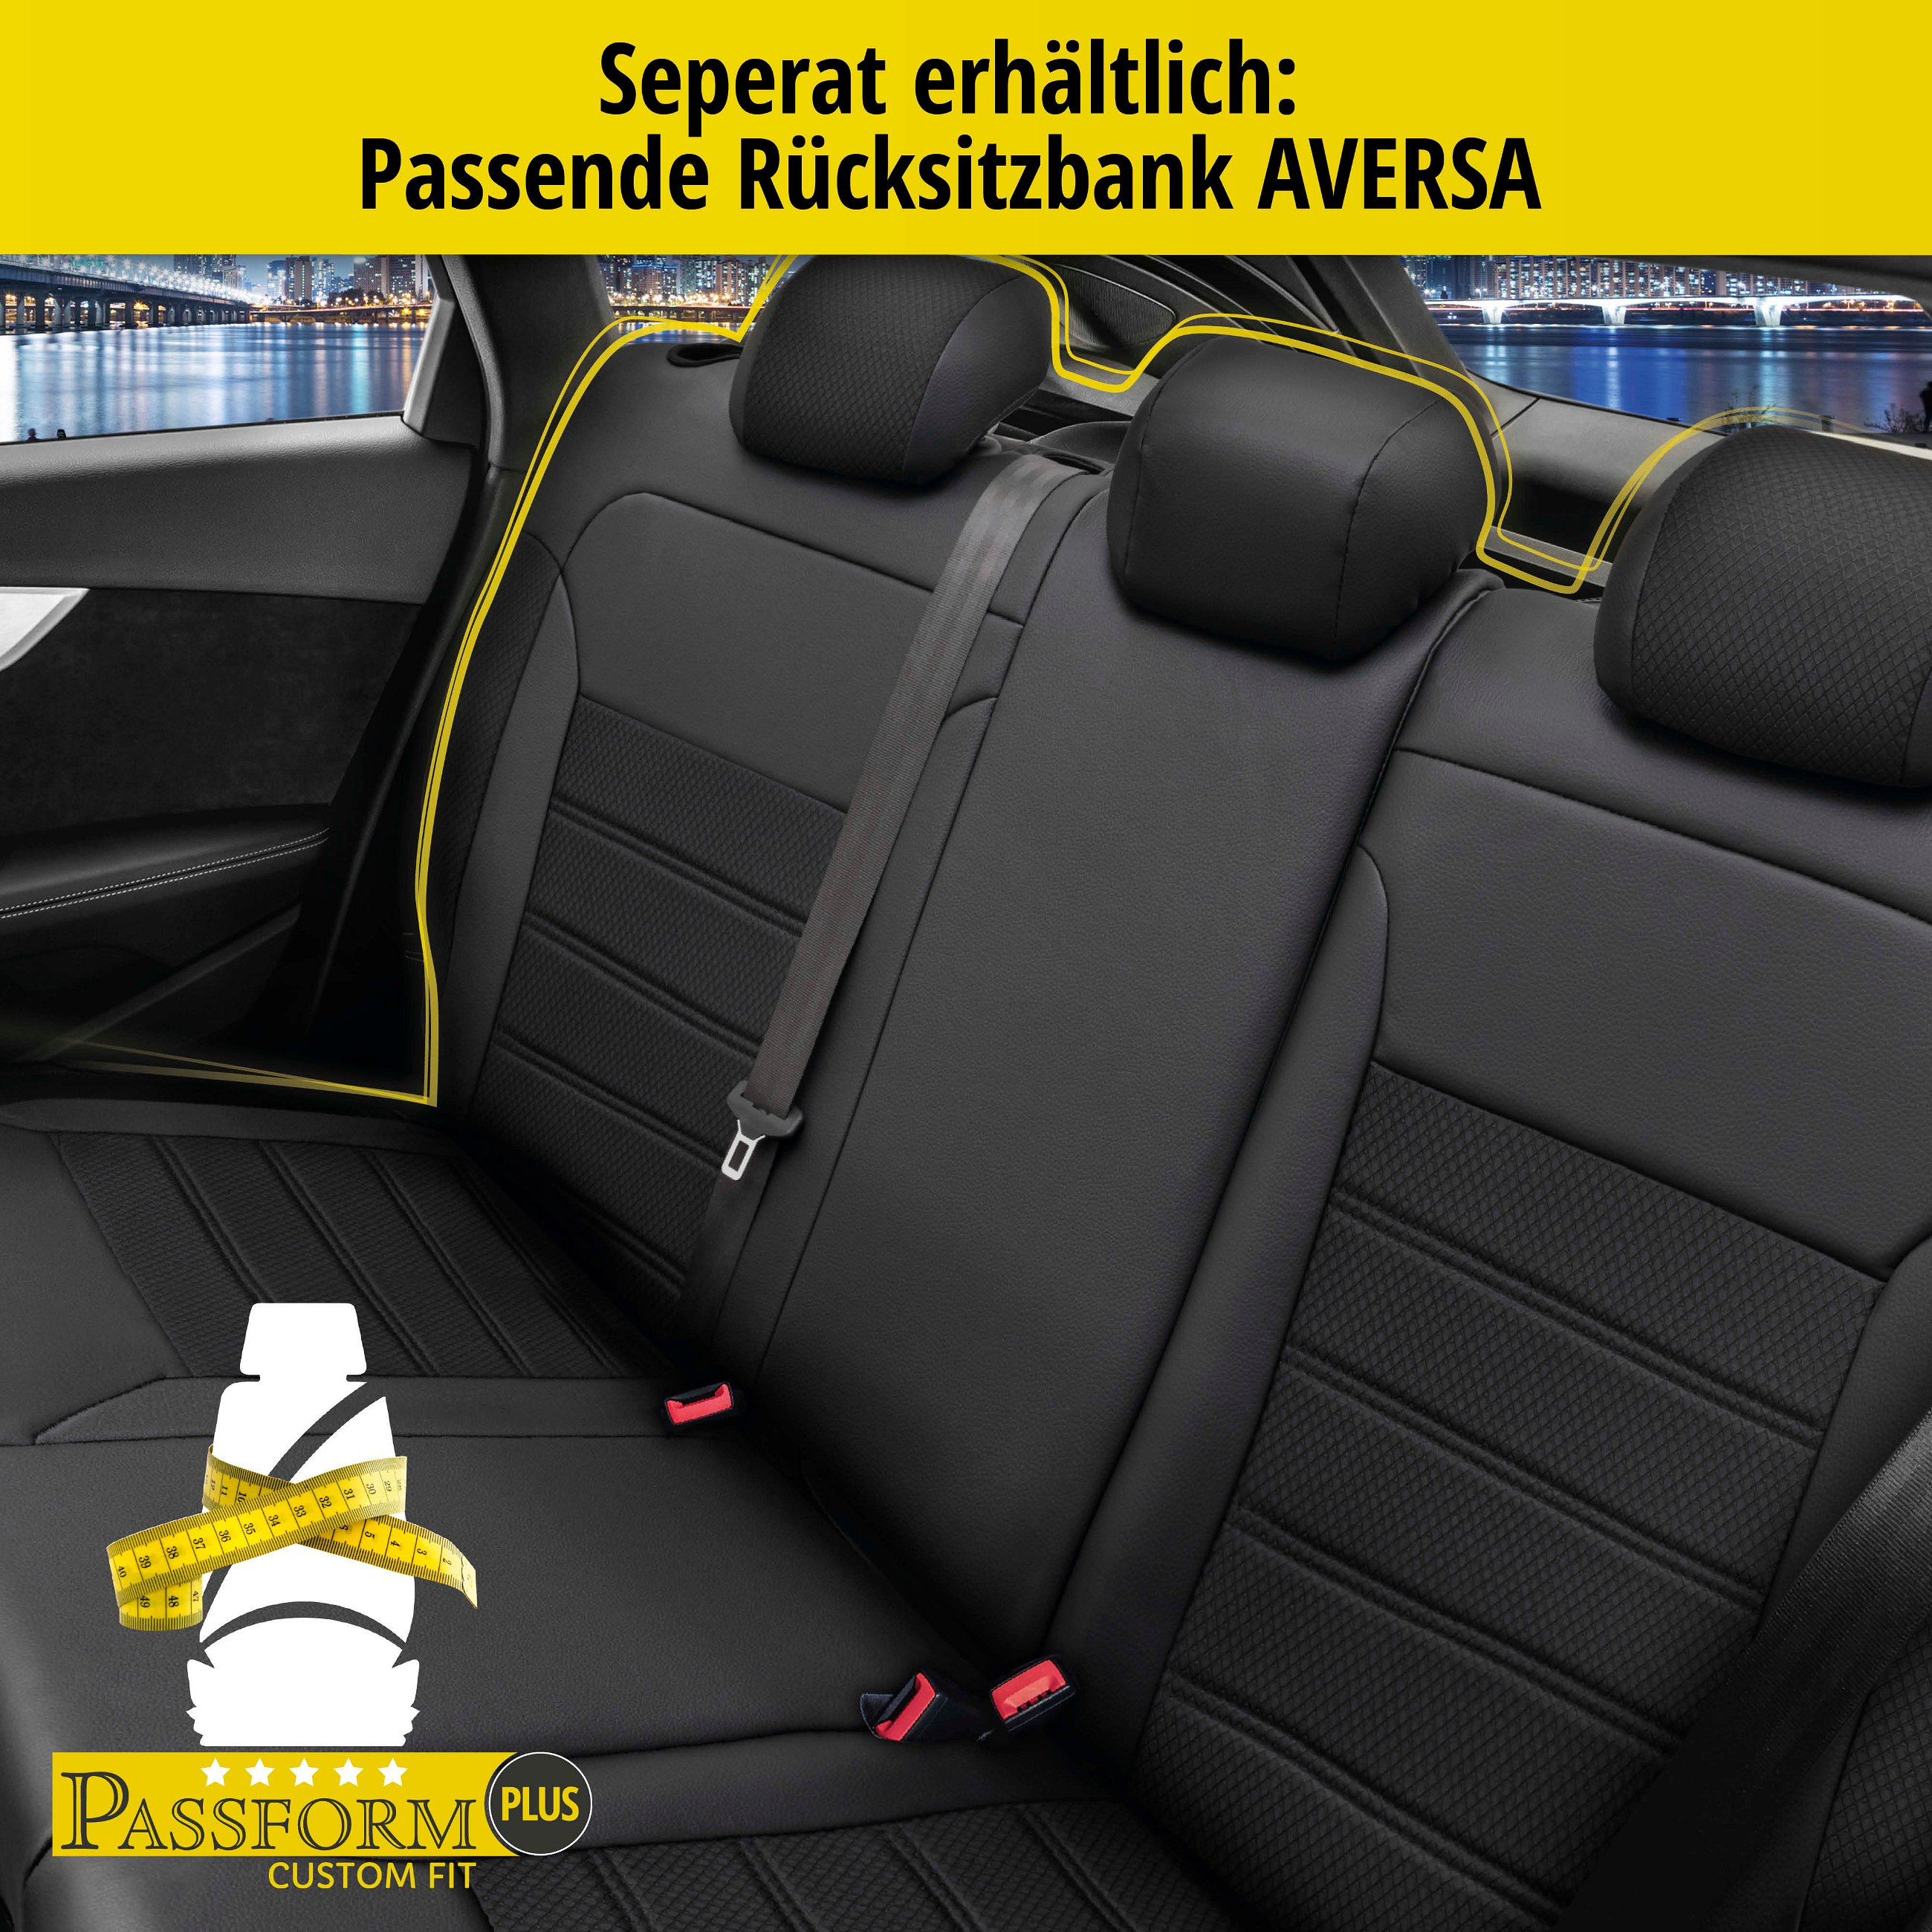 Passform Sitzbezug Aversa für Renault Clio III BR0/1, CR0/1 01/2005-12/2014, 2 Einzelsitzbezüge für Normalsitze